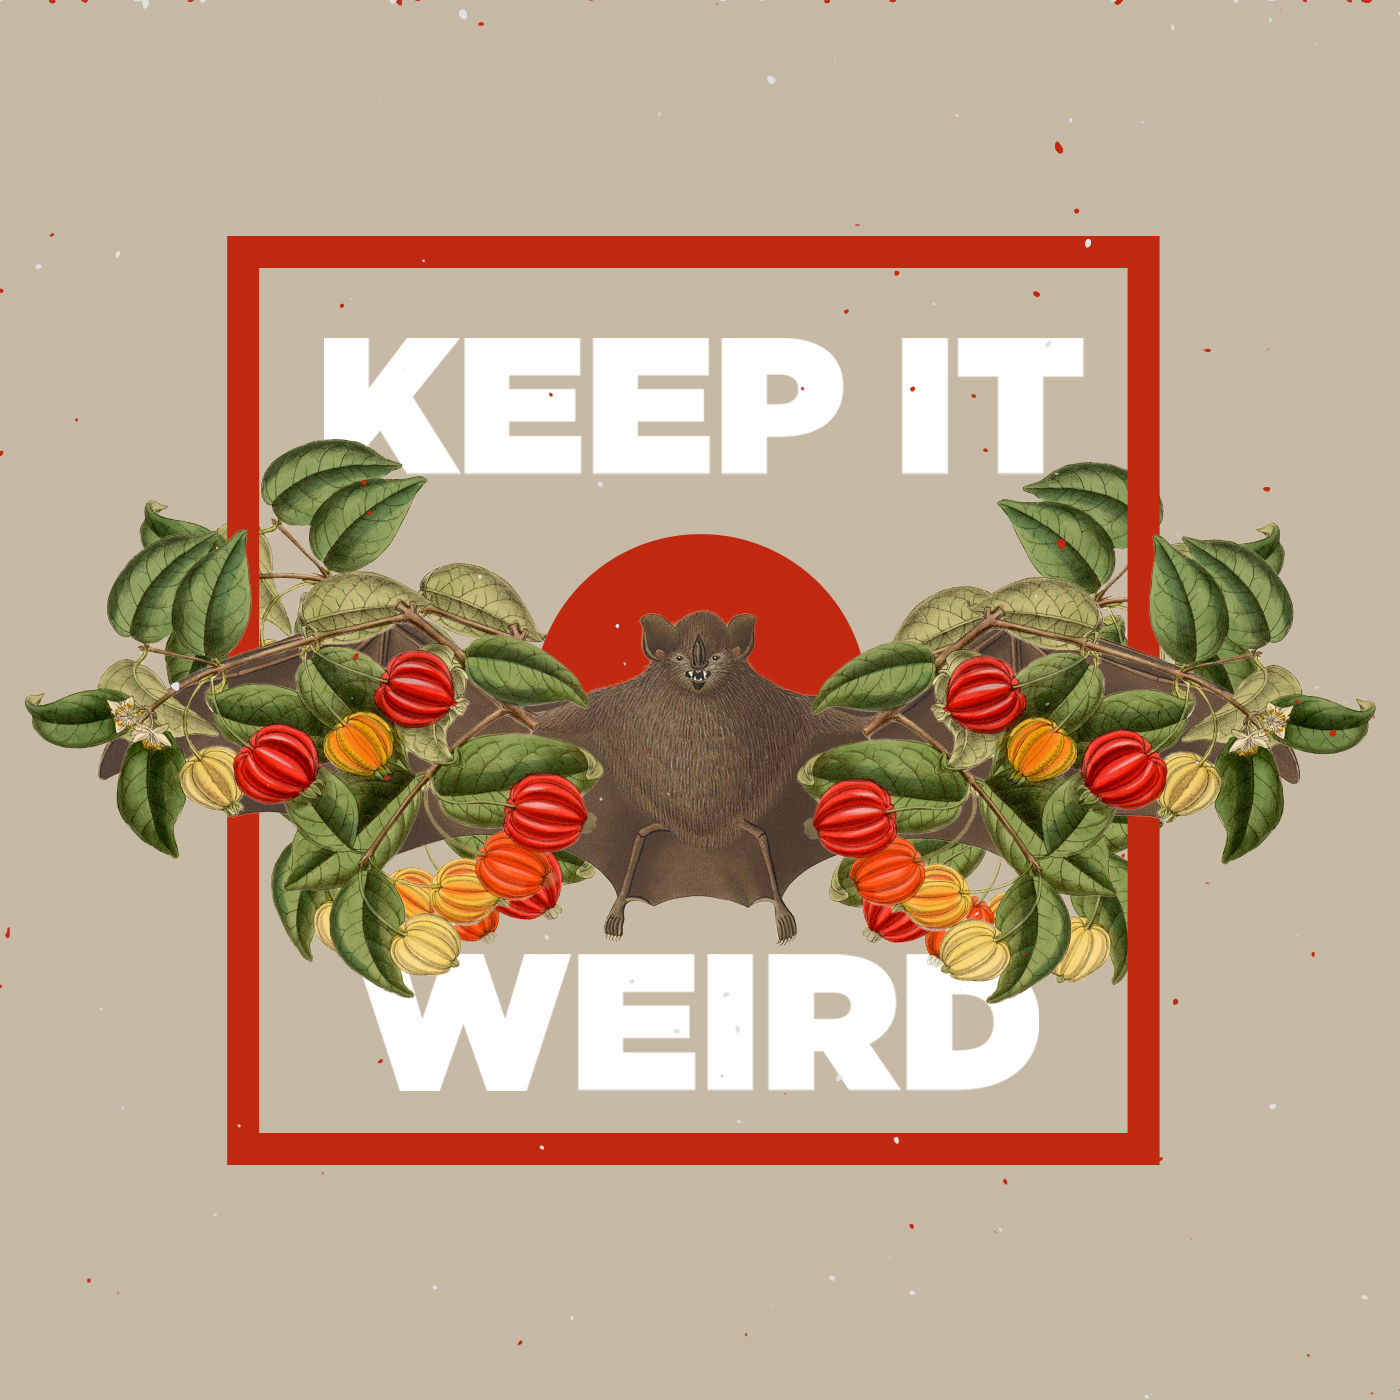 Keep it weird